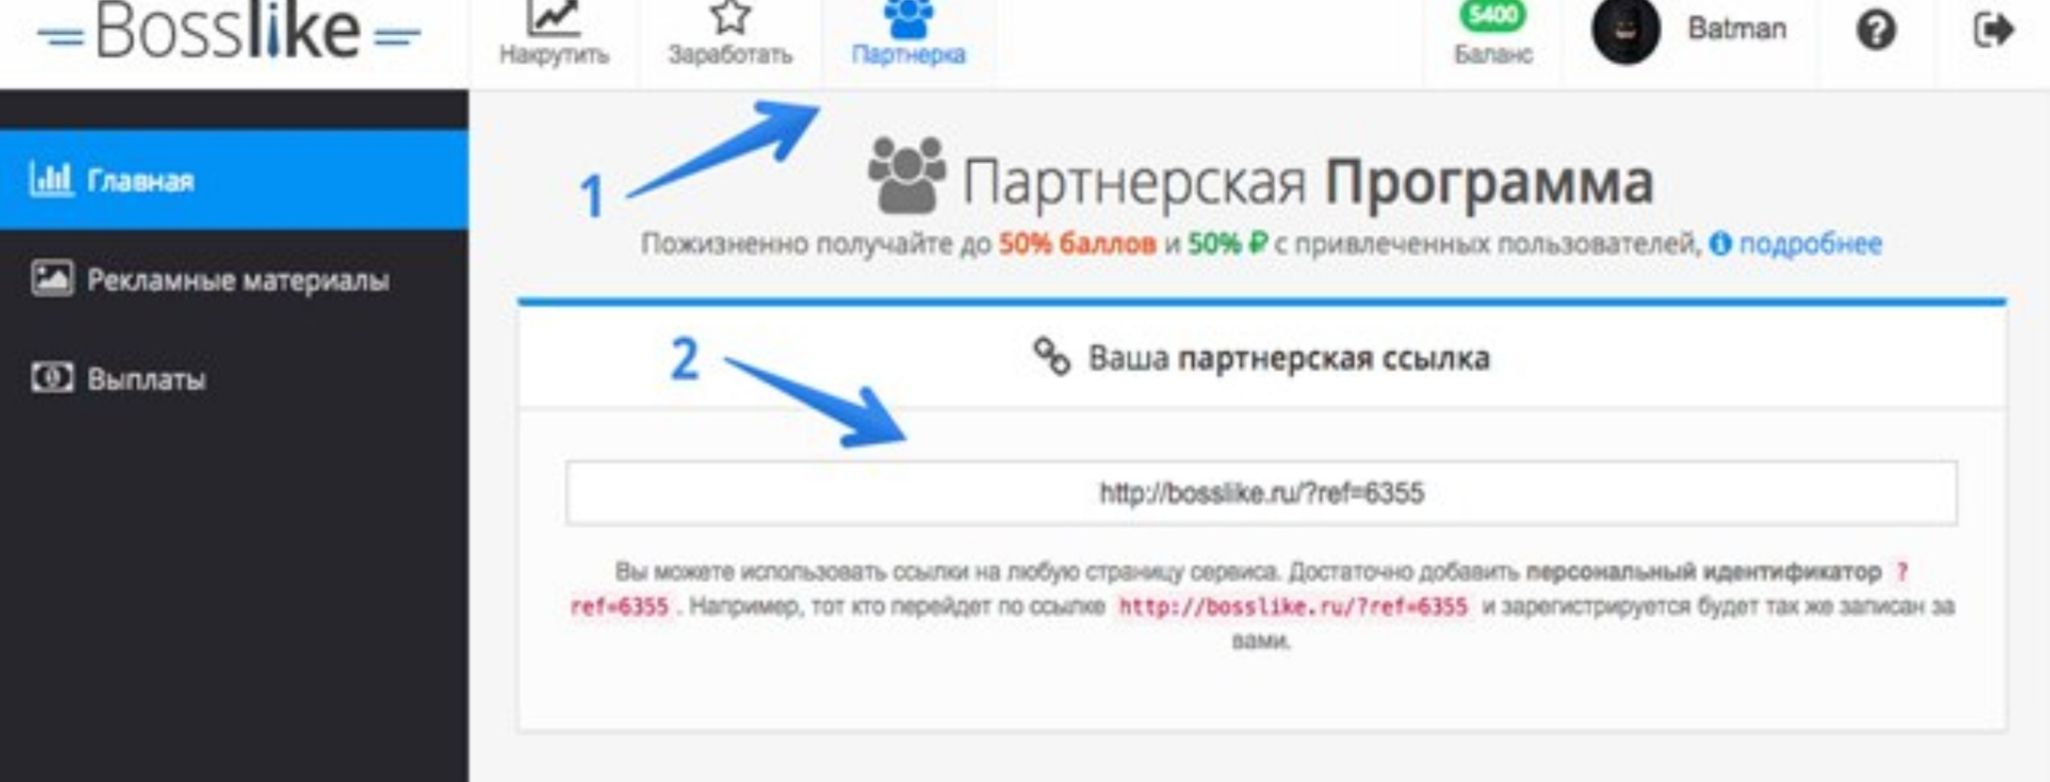 Bosslike ru. Как пользоваться приложением Босслайк. Как зарегистрироваться накрутка .ру.